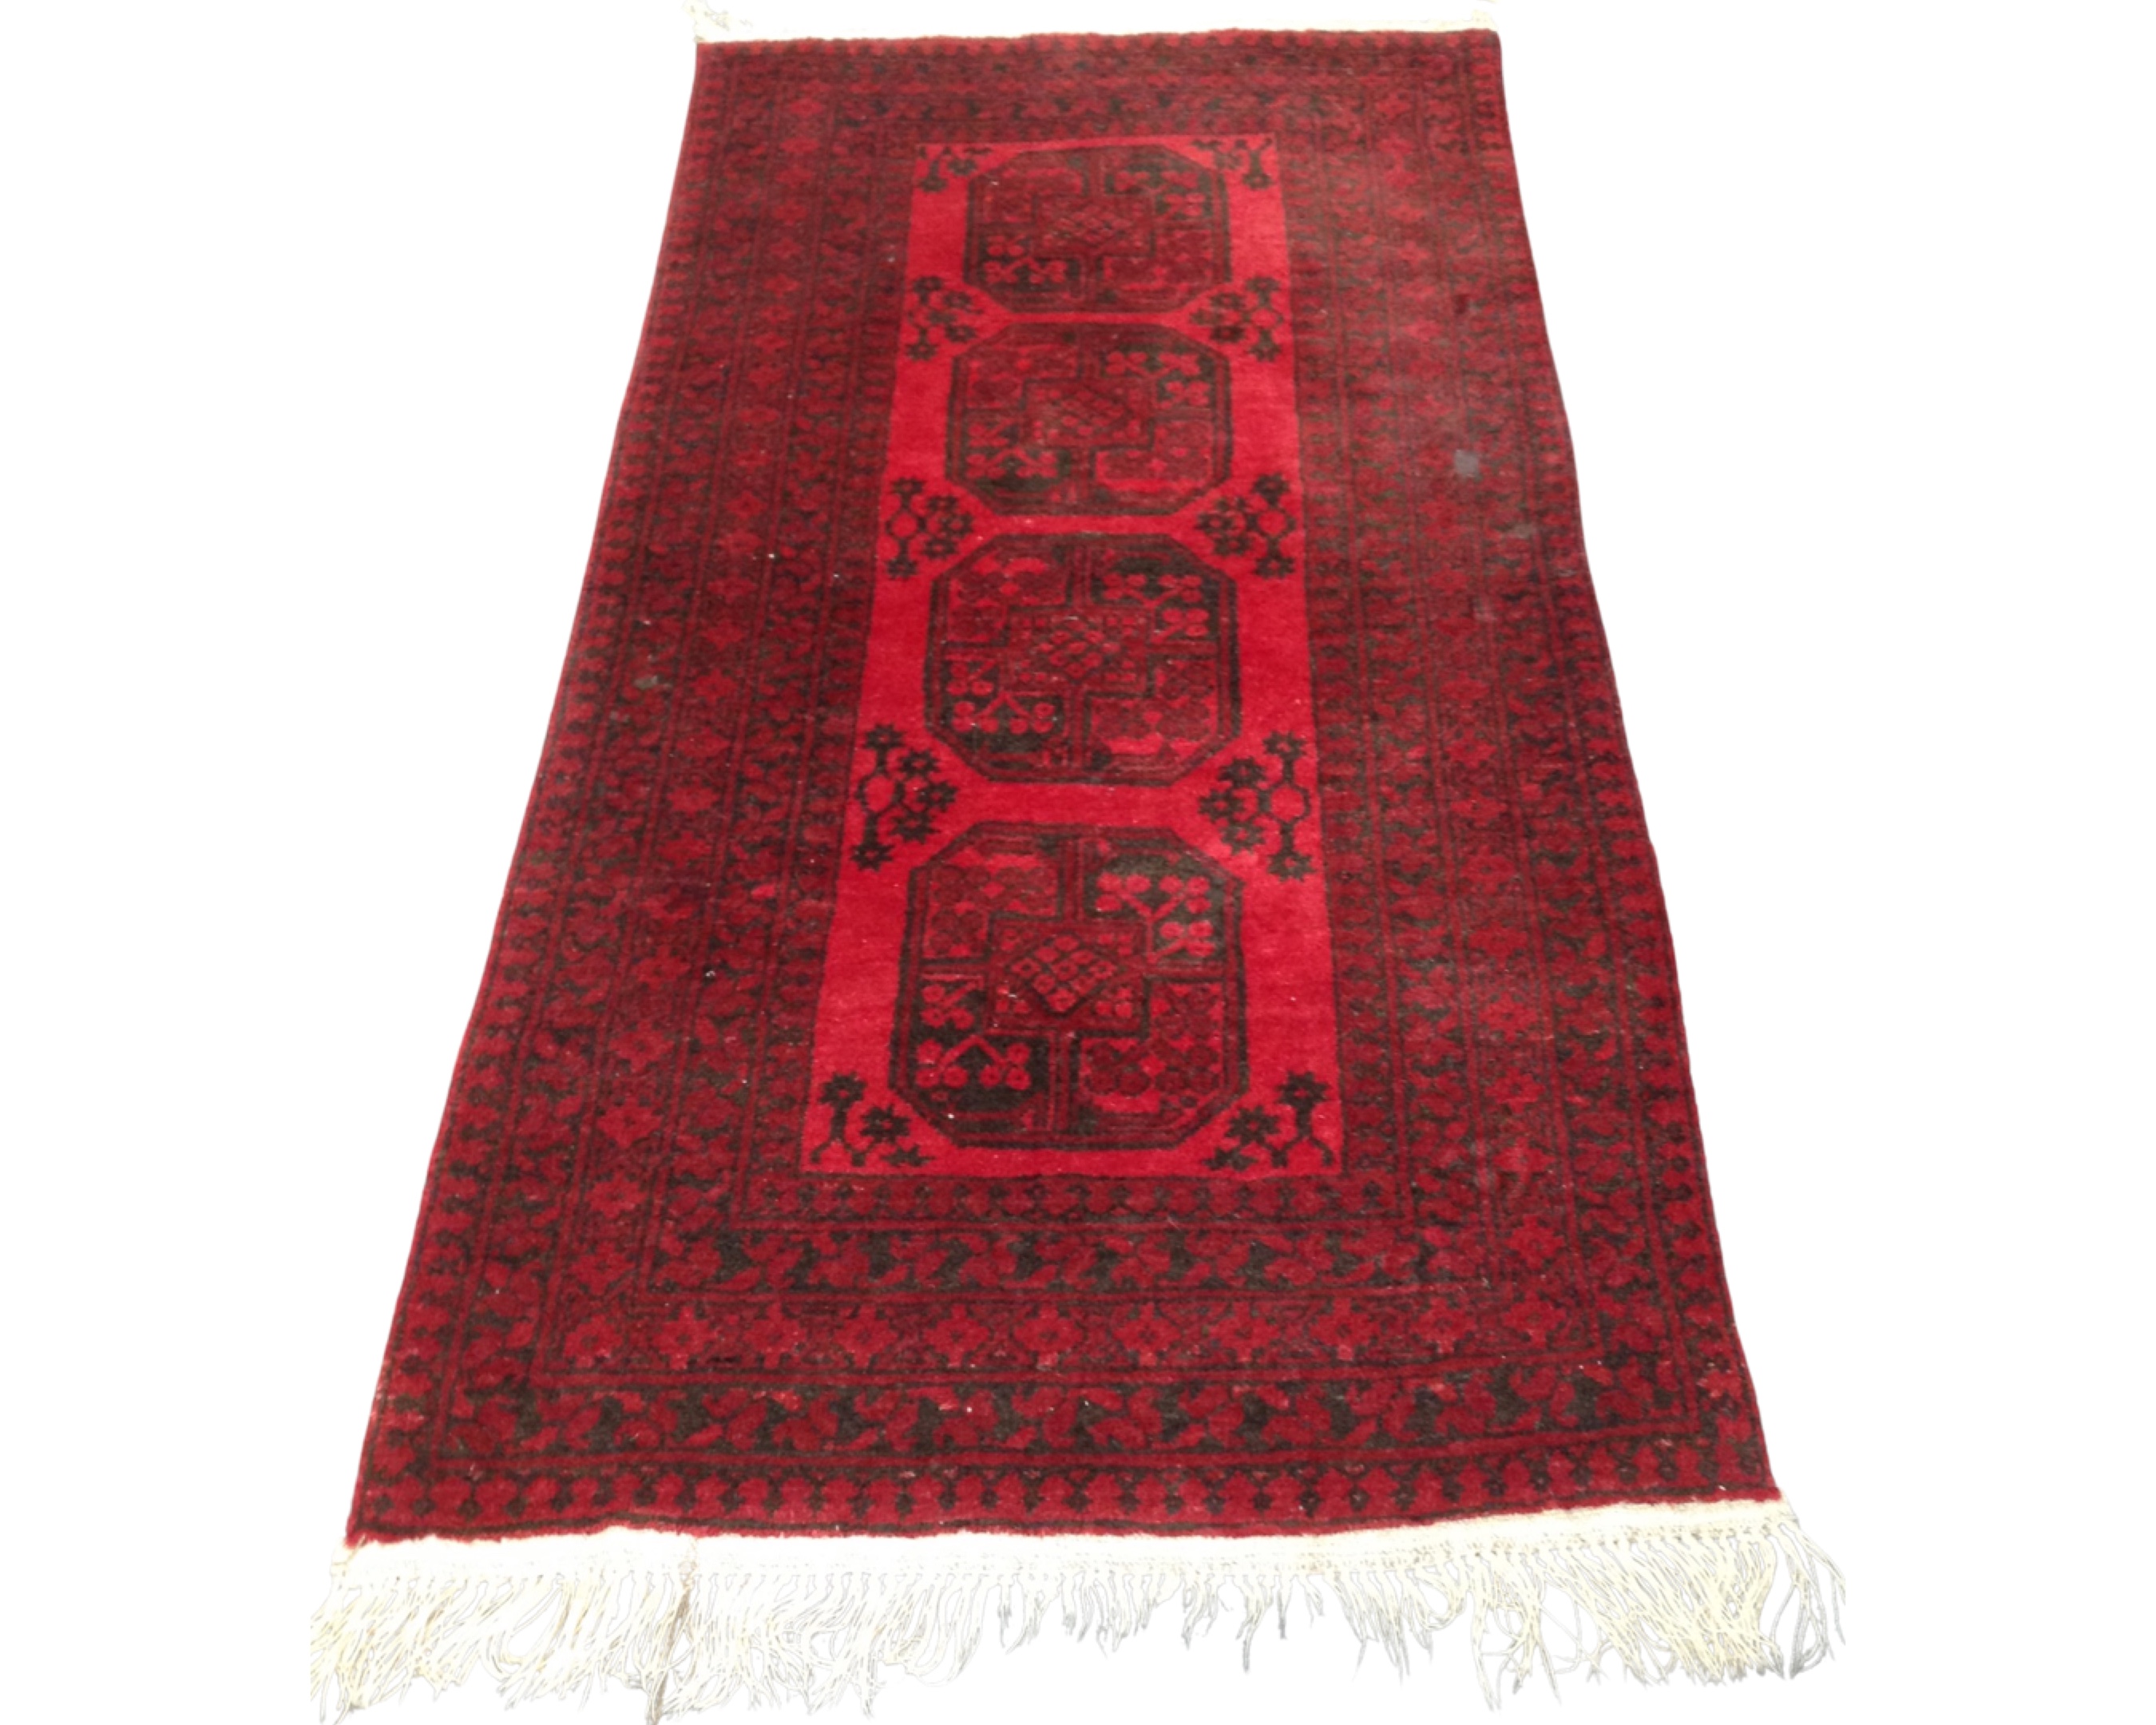 A Bokhara rug, Afghanistan, 101cm by 196cm.